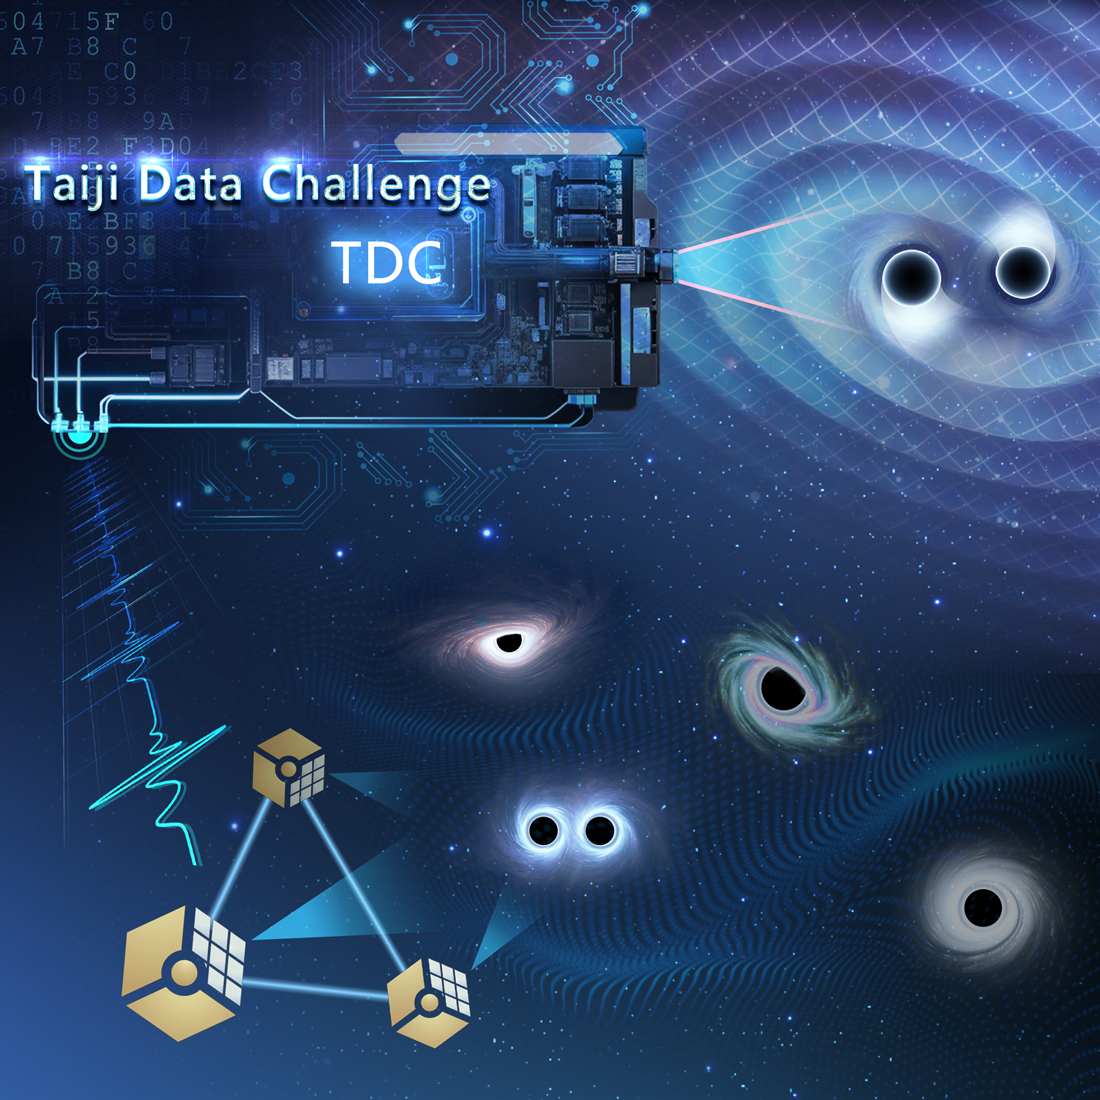 国科大引力波宇宙太极实验室提出了“太极计划”的第一个数据挑战